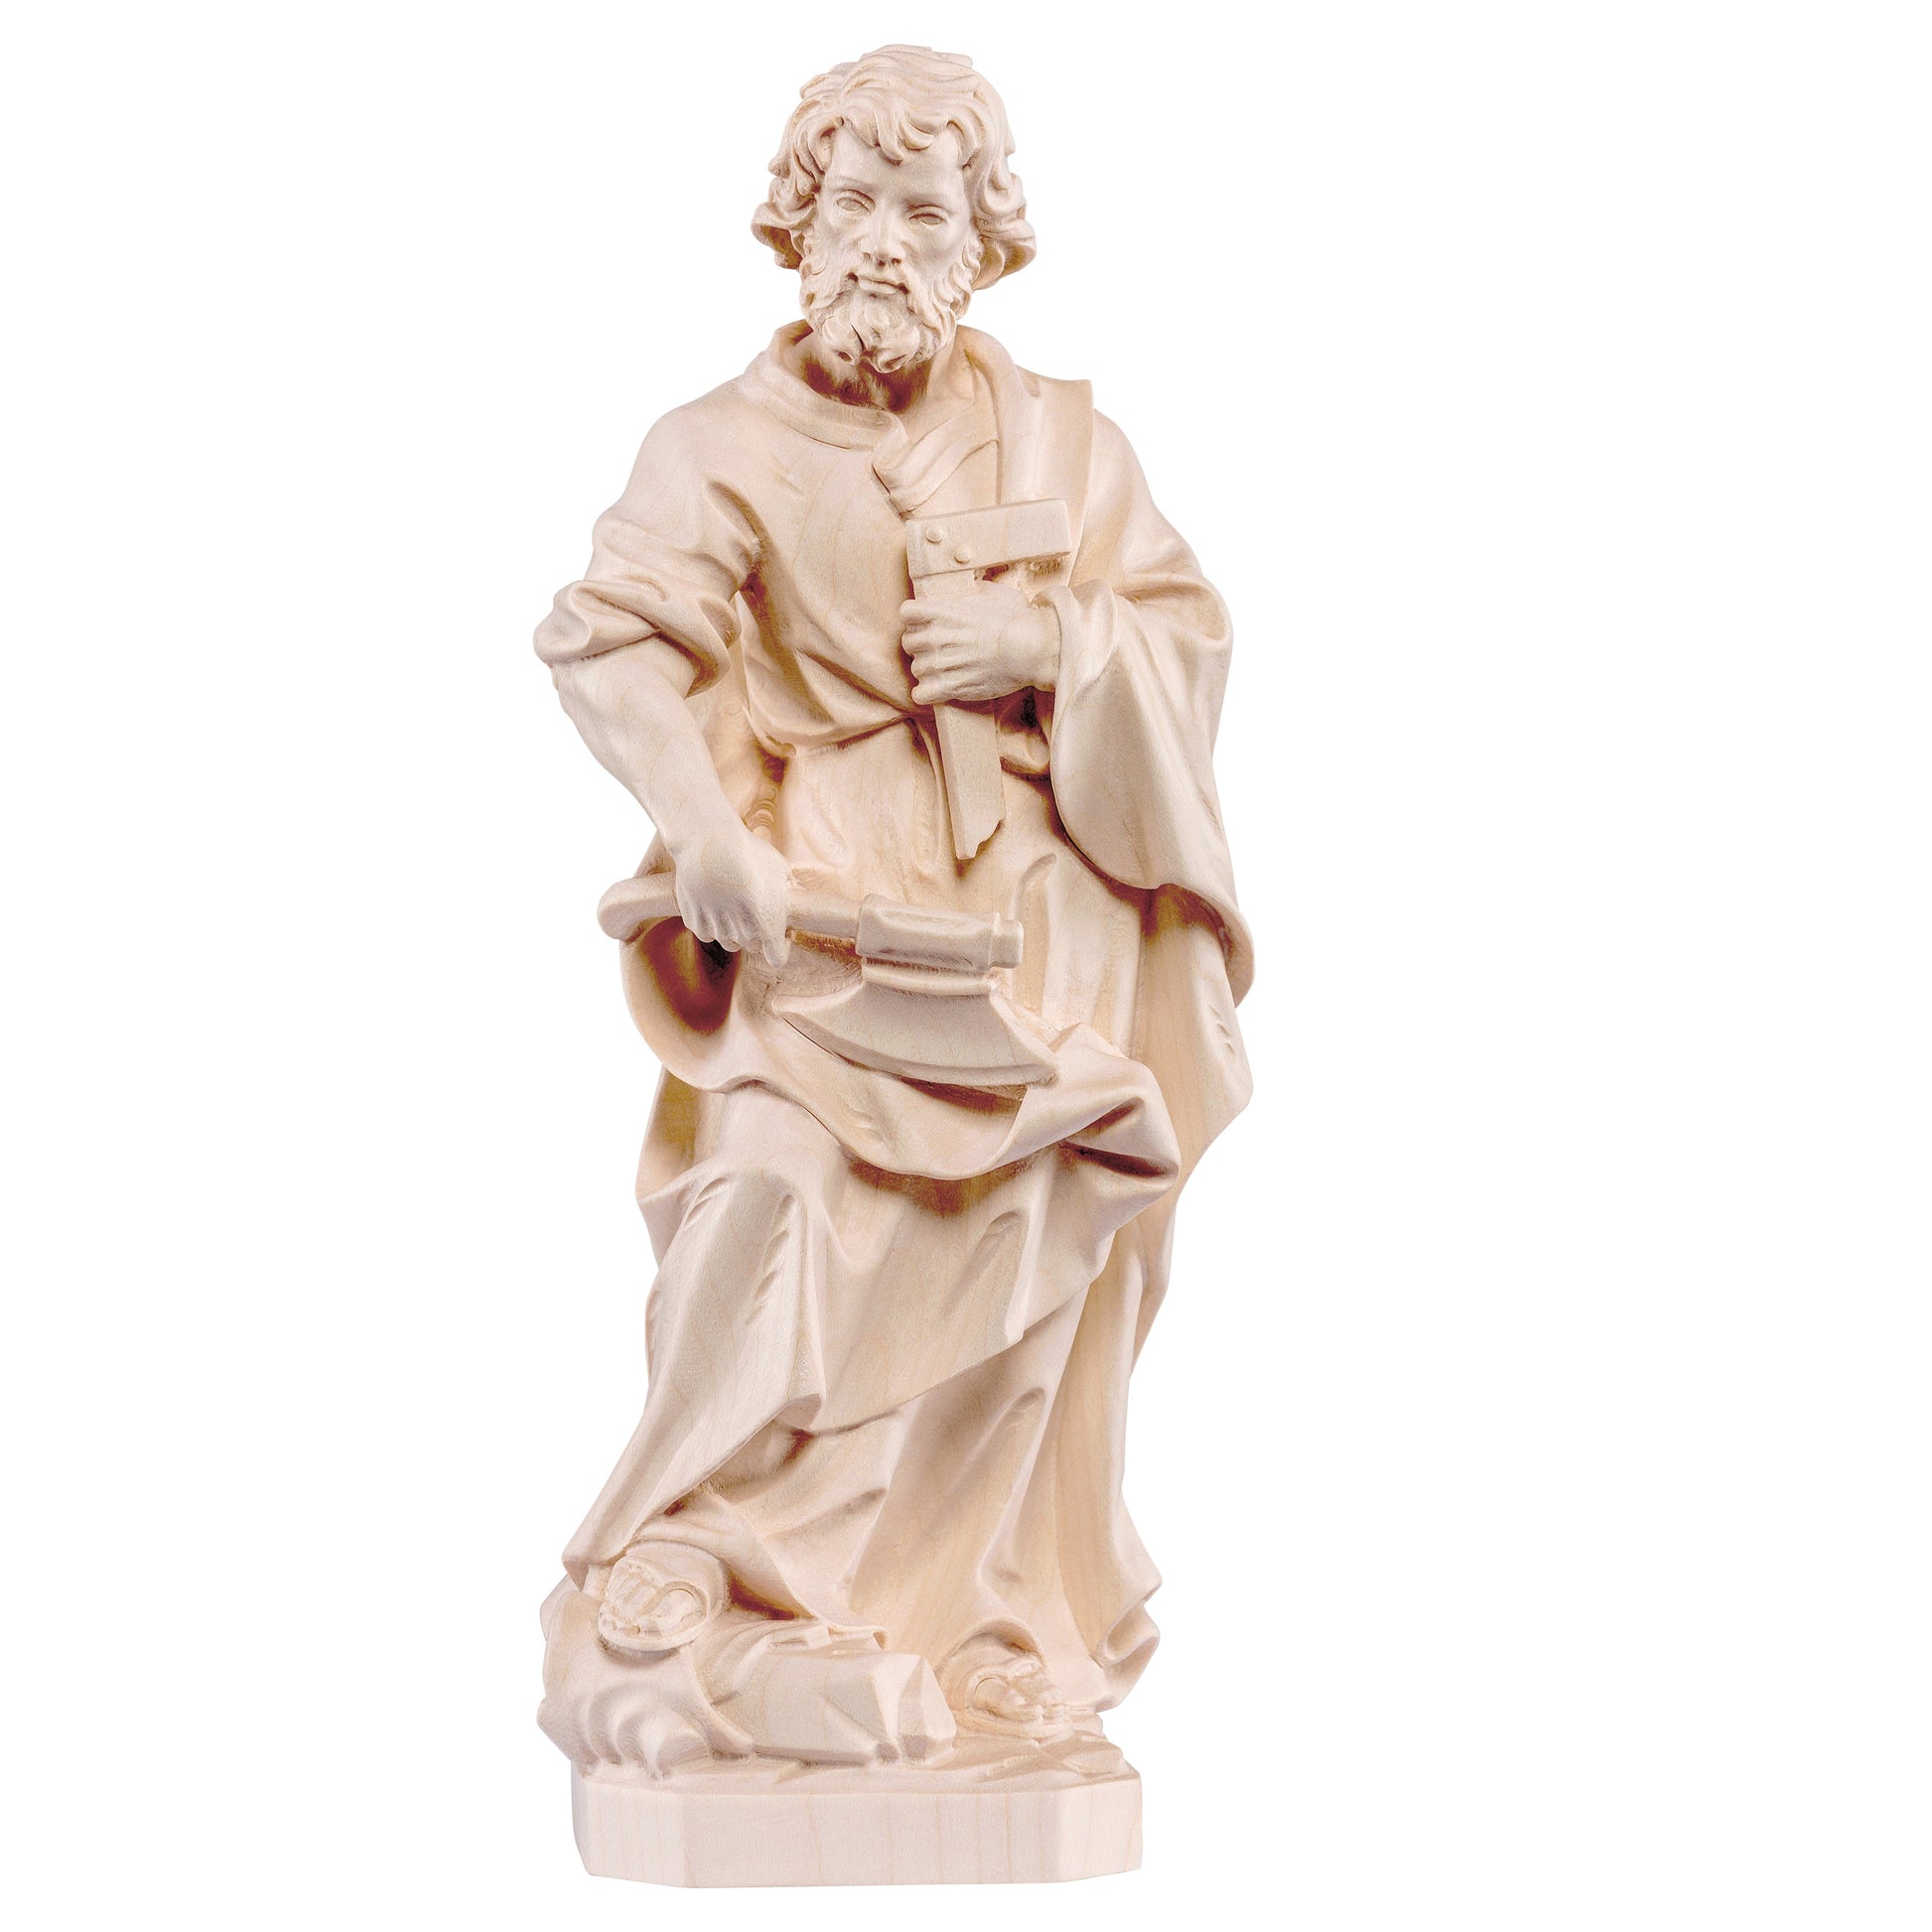 Mondo Cattolico Natural / 10 cm (3.9 in) Wooden statue of St. Joseph the carpenter